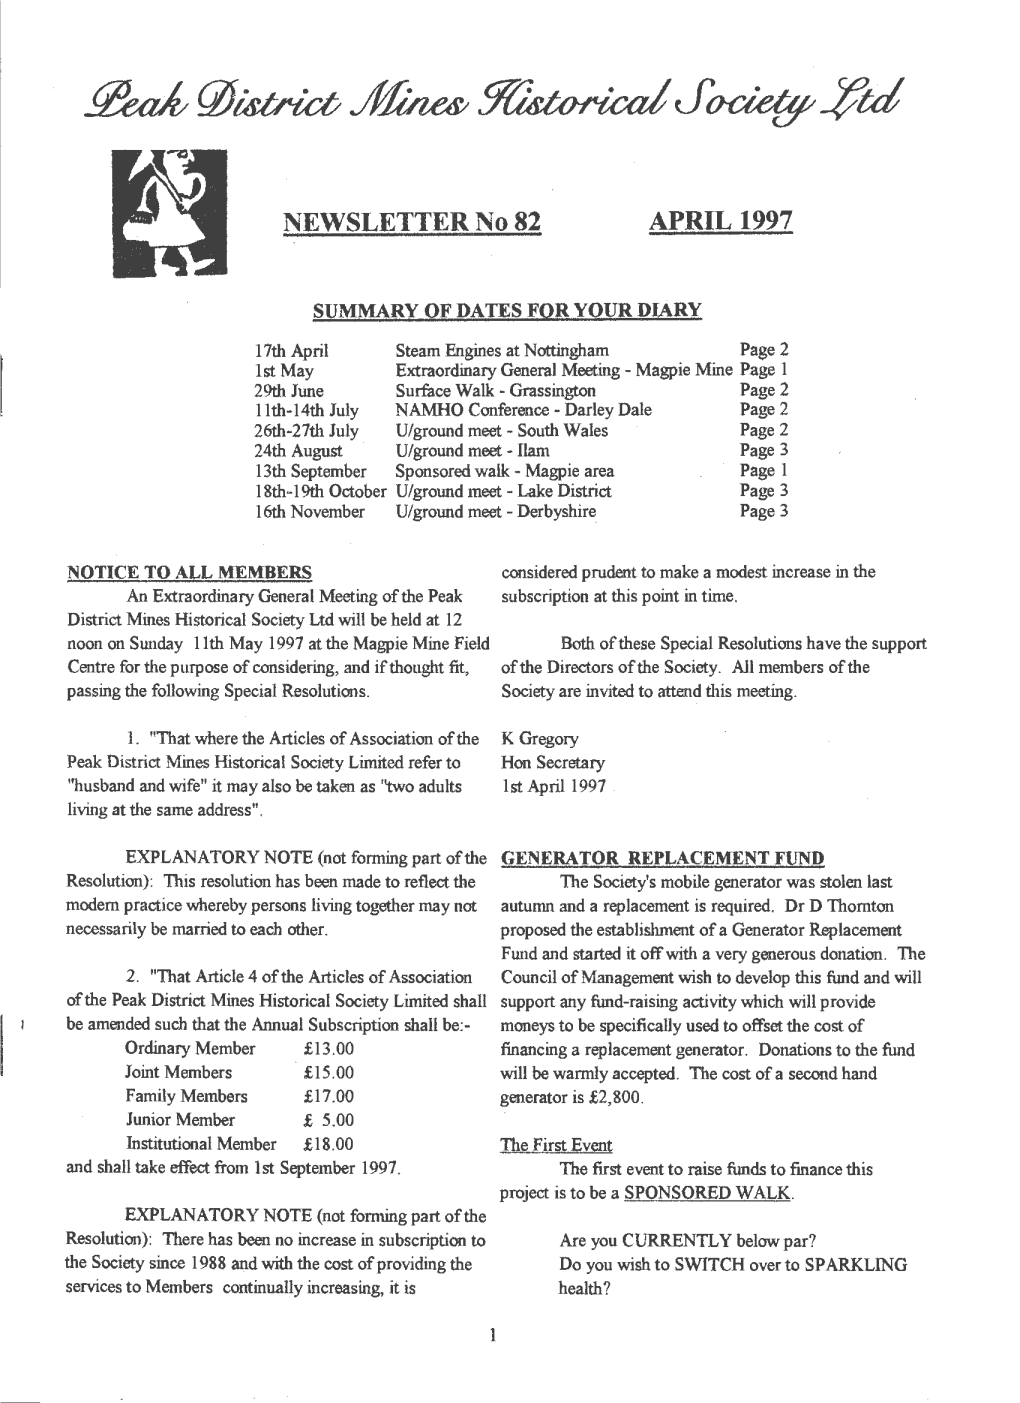 NEWSLETTER No 82 APRIL 1997